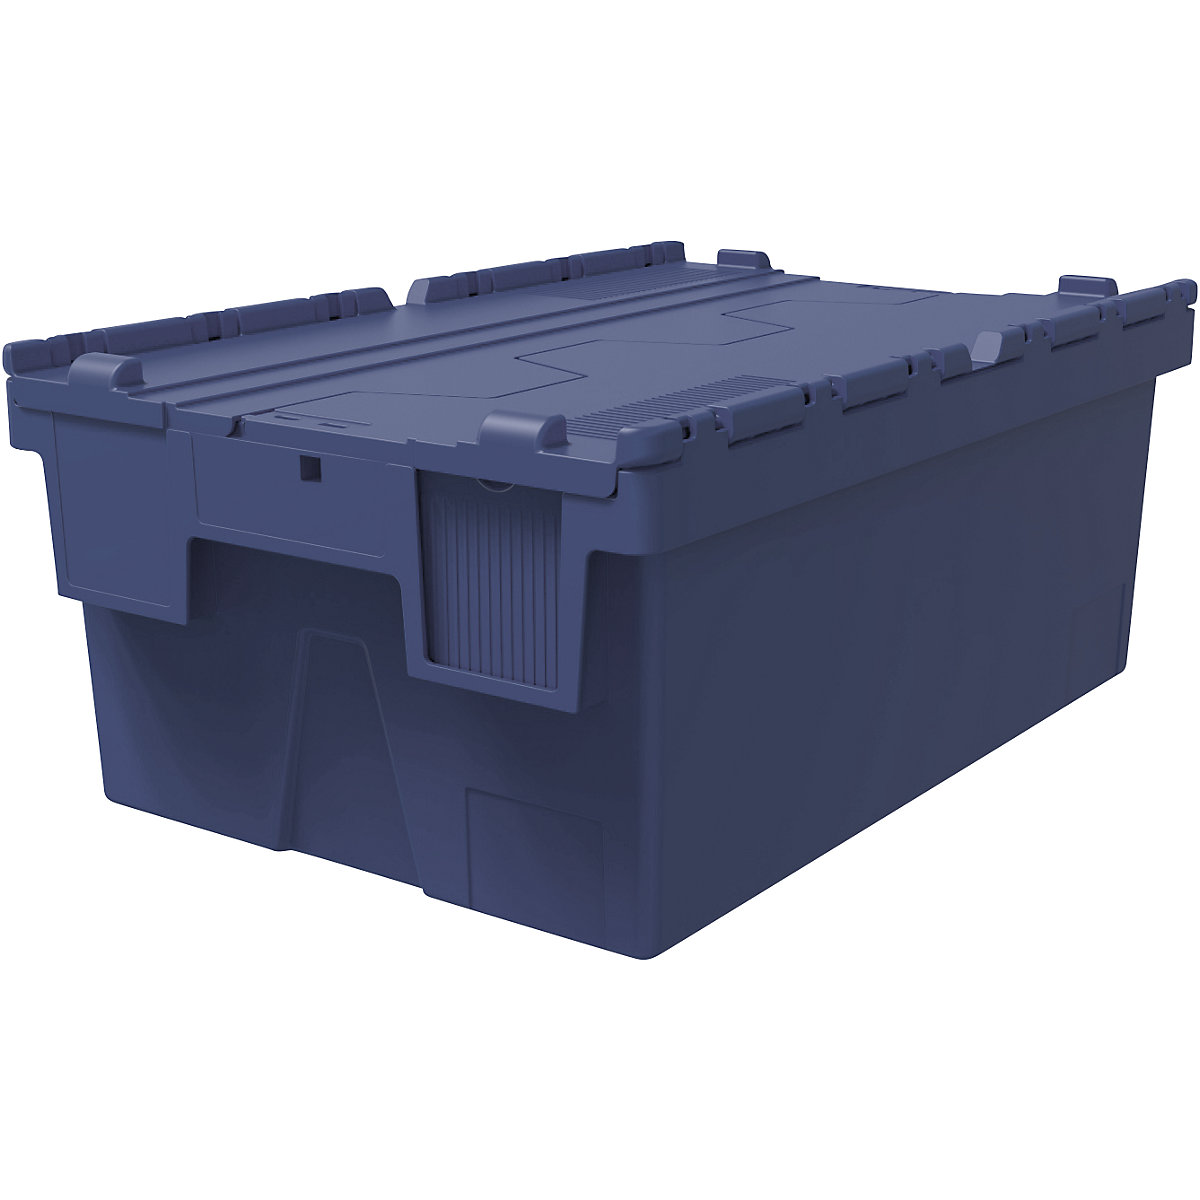 Többször használható rakásolható tároló, h x szé x ma 600 x 400 x 250 mm, cs. e. 5 db, kék színben, kék fedéllel